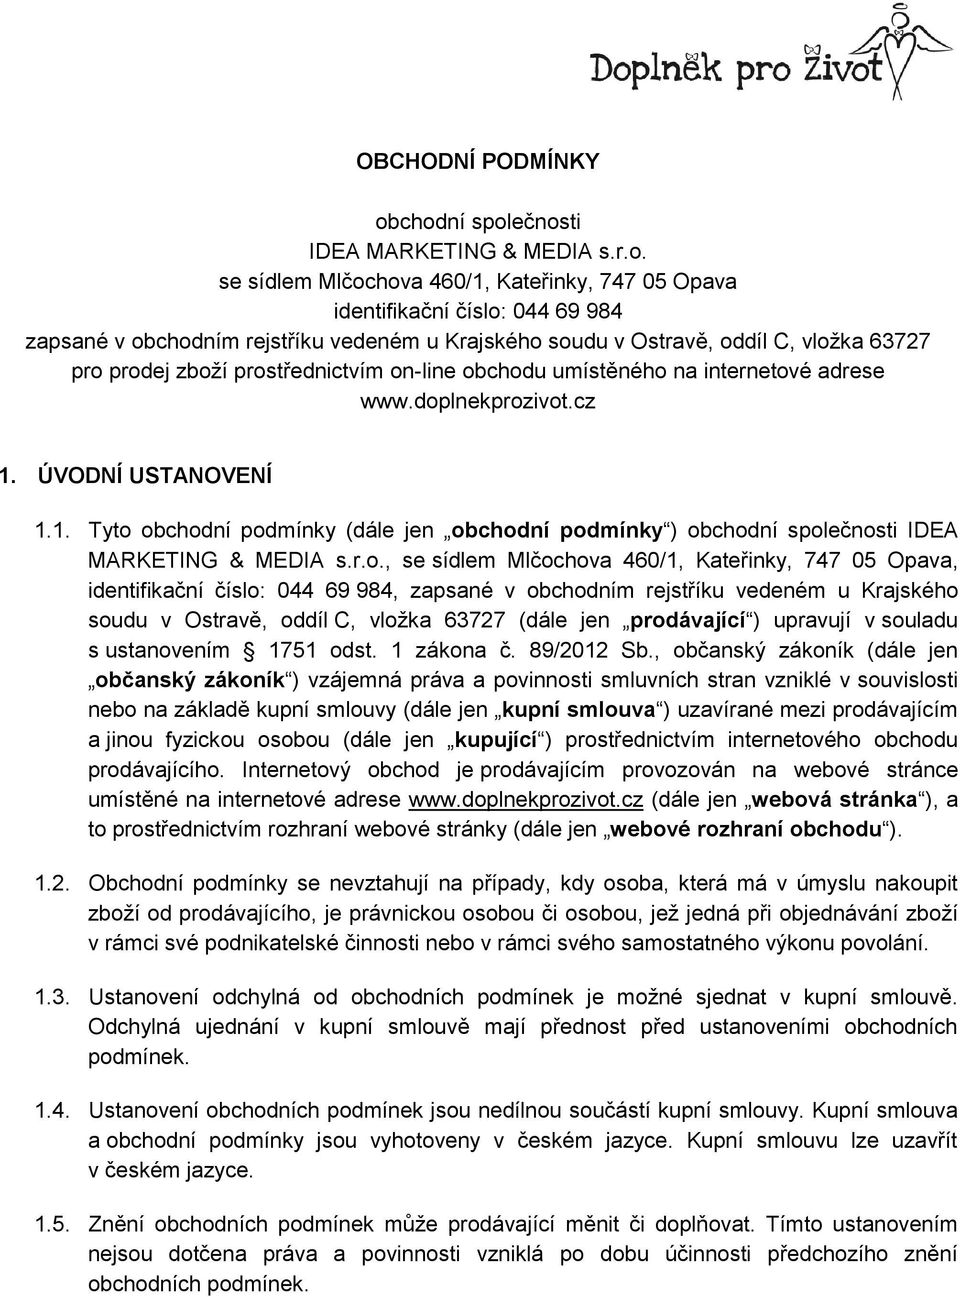 oddíl C, vložka 63727 pro prodej zboží prostřednictvím on-line obchodu umístěného na internetové adrese www.doplnekprozivot.cz 1.